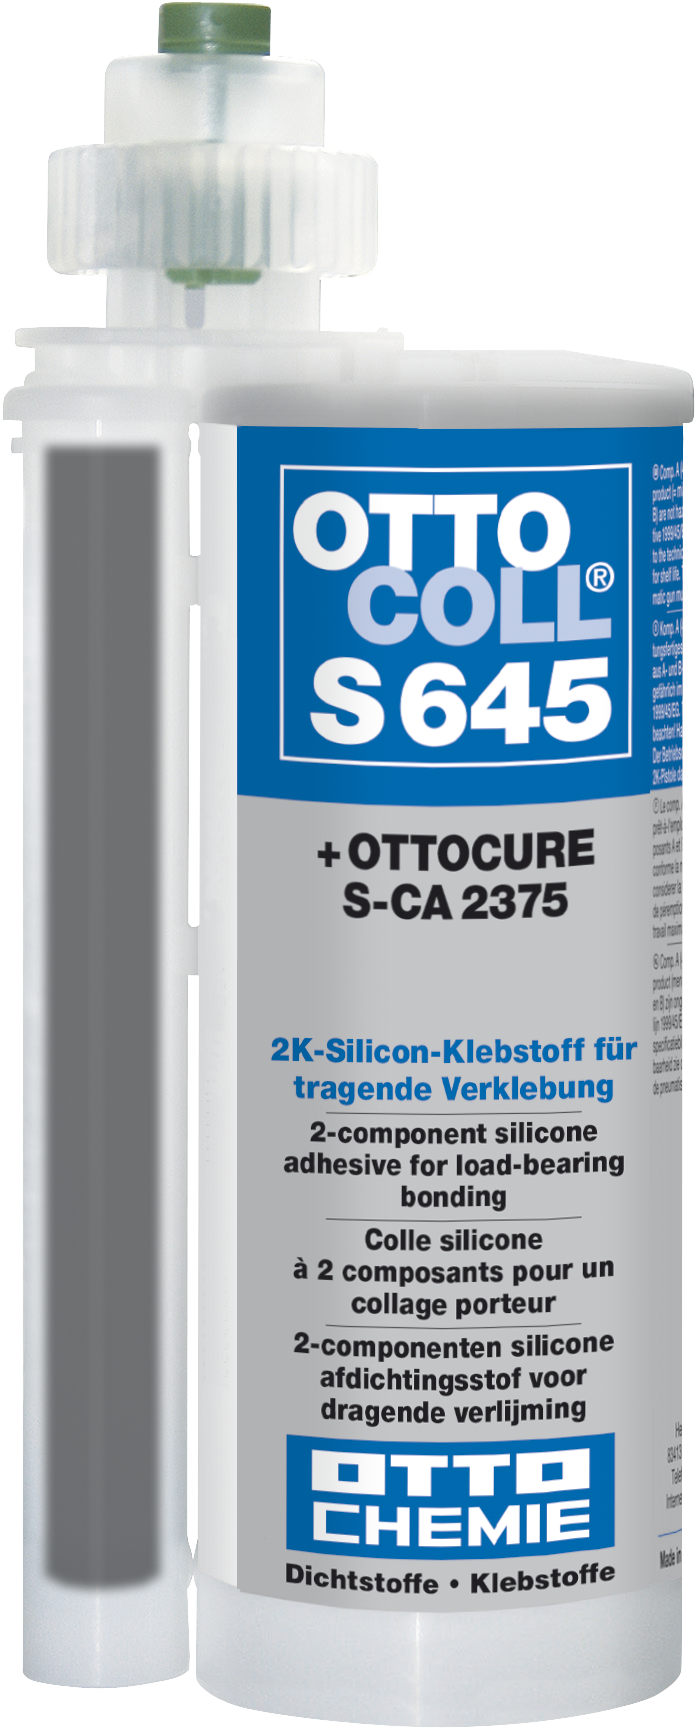 Ottocoll S-CA 2375 erlaubt eine einfache Verarbeitung mi﻿ttels der praktischen Side-by-side-Kartusche.